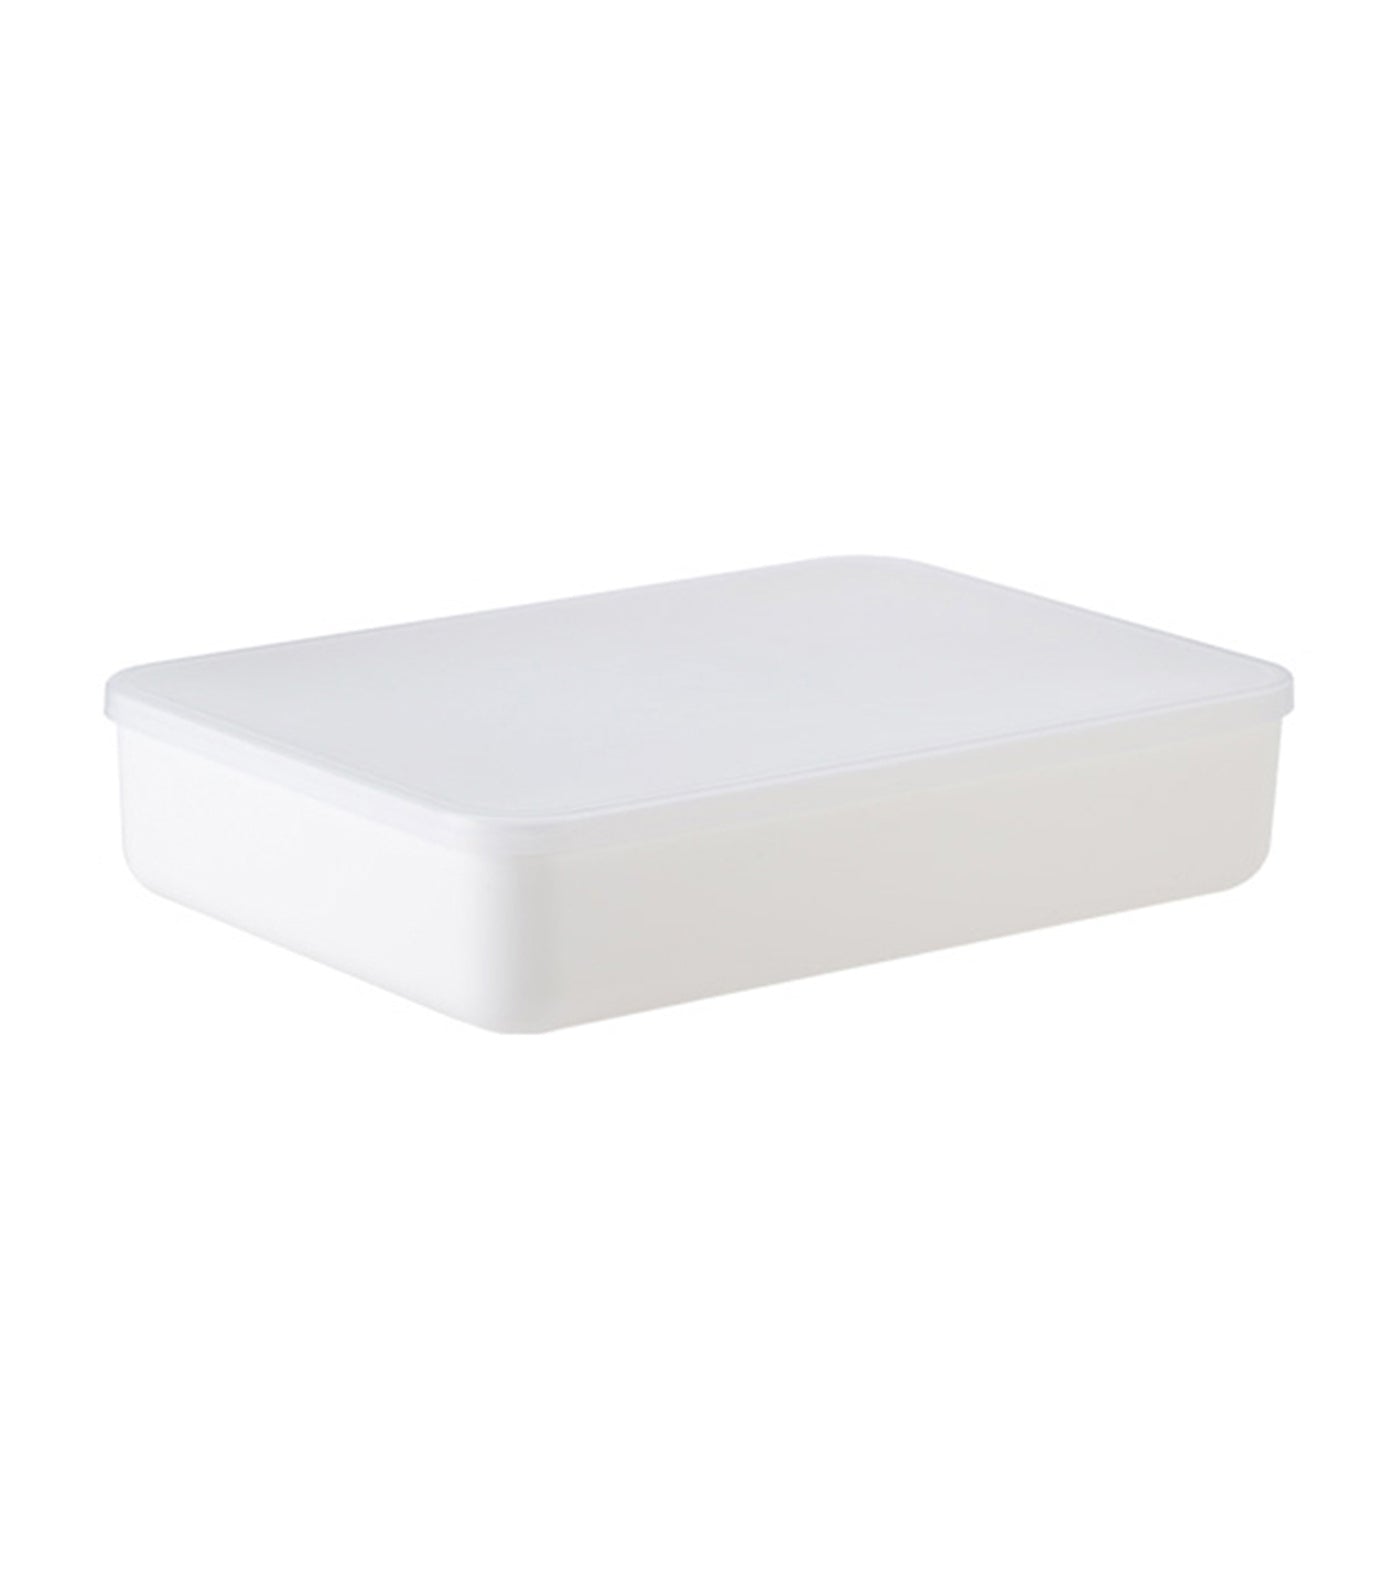 MakeRoom Large Flat Storage Box - White